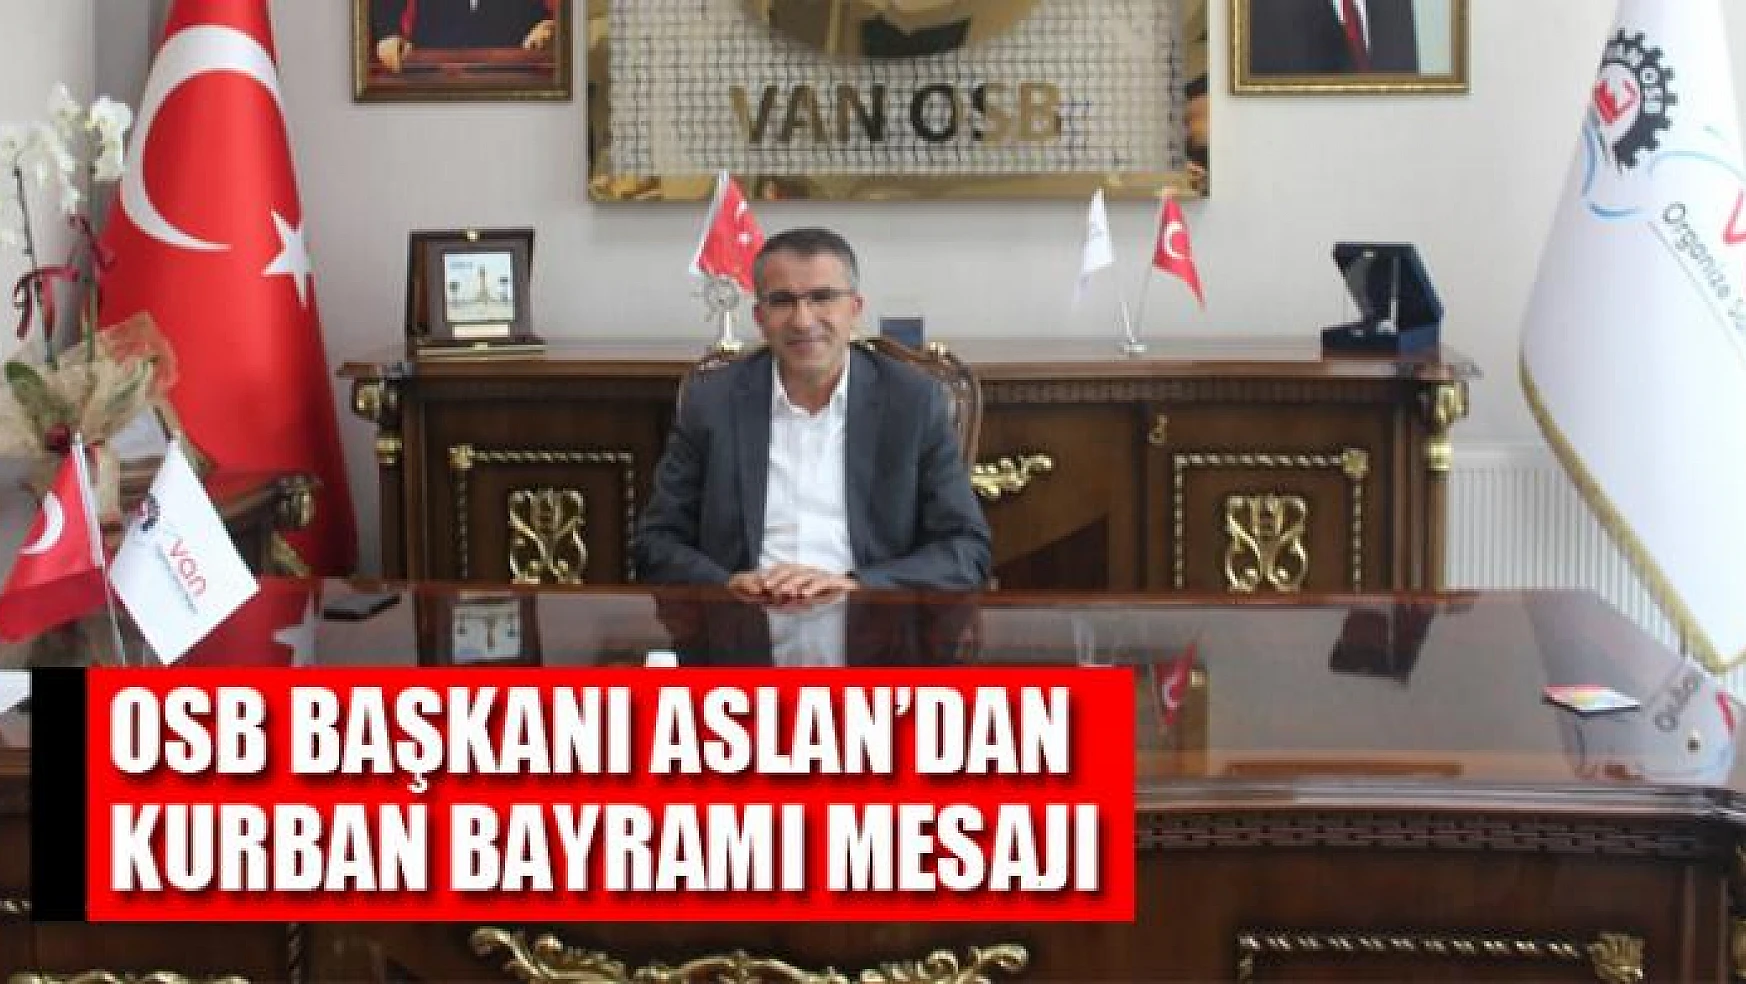 Van OSB Başkanı Aslan'dan Kurban bayramı mesajı